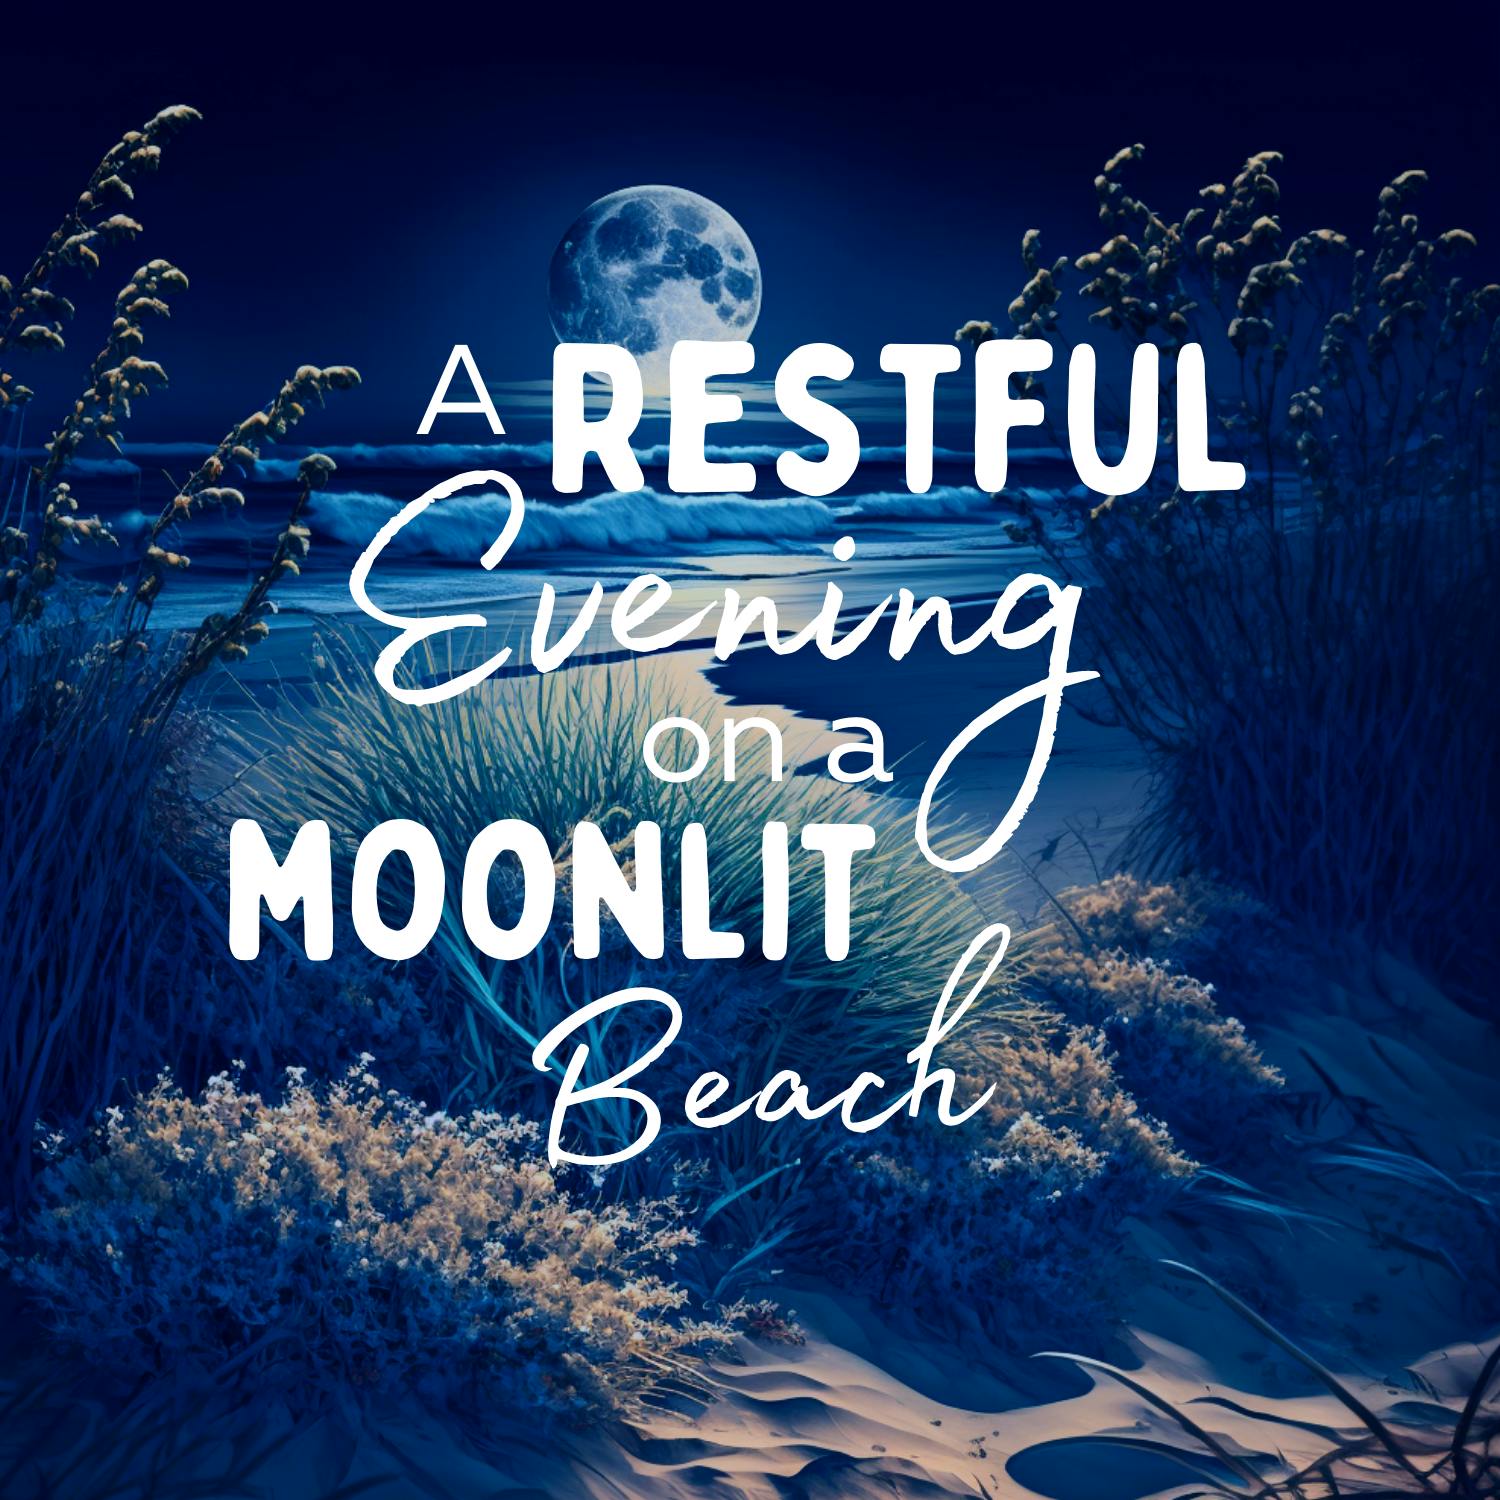 A Restful Evening on a Moonlit Beach